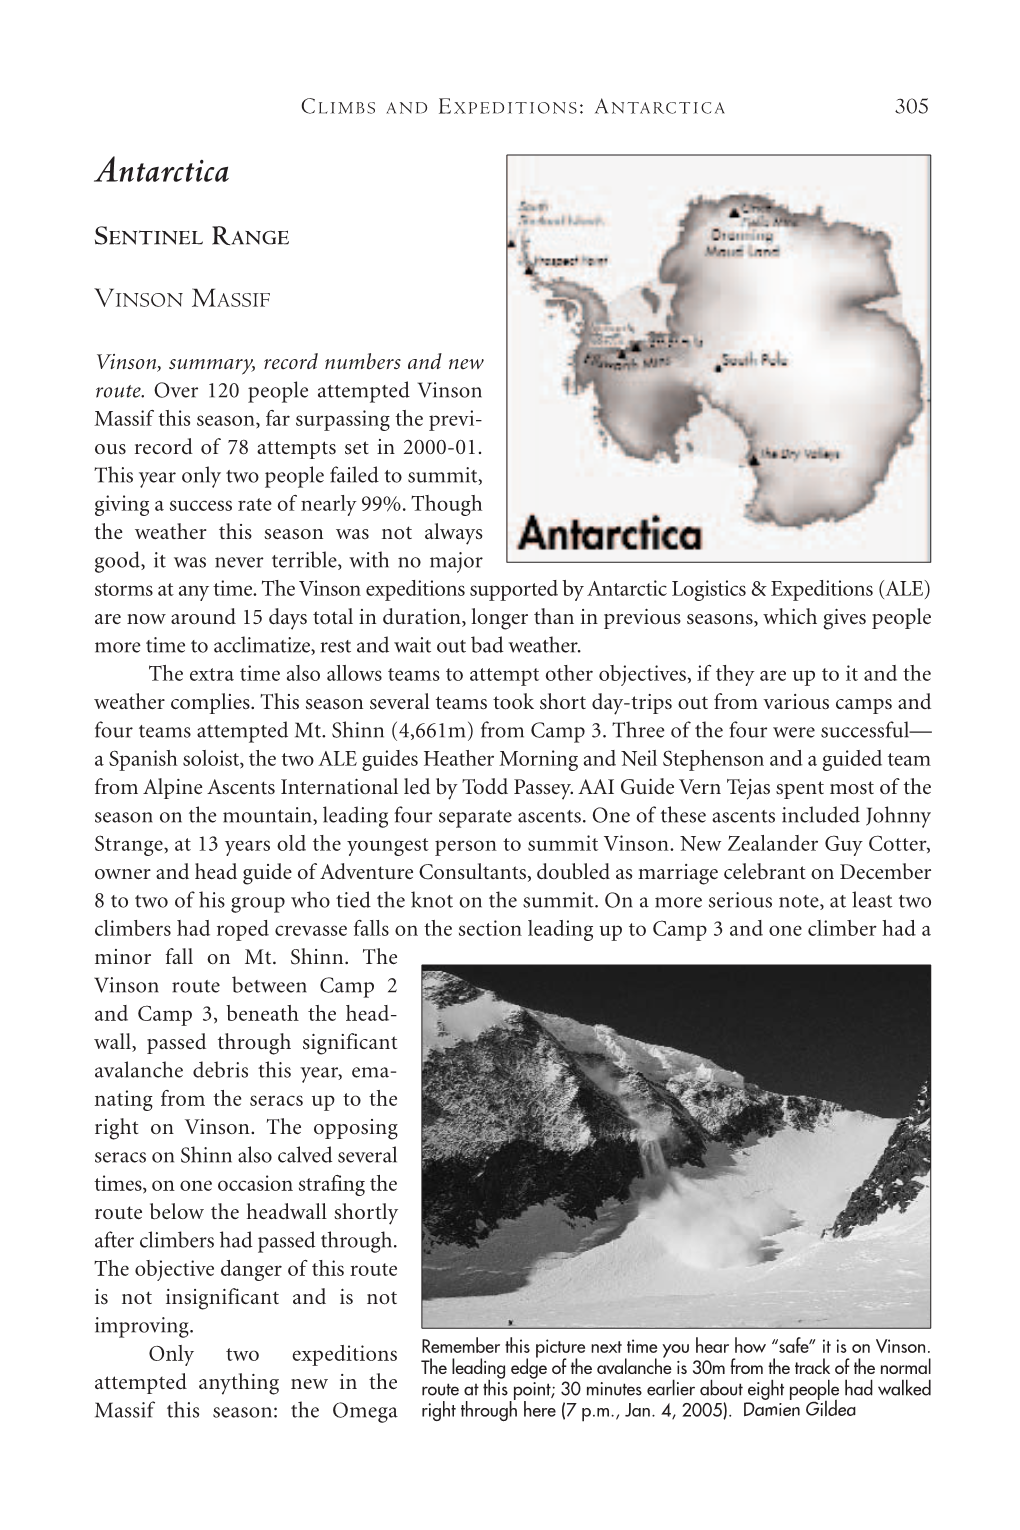 ANTARCTICA 305 Antarctica